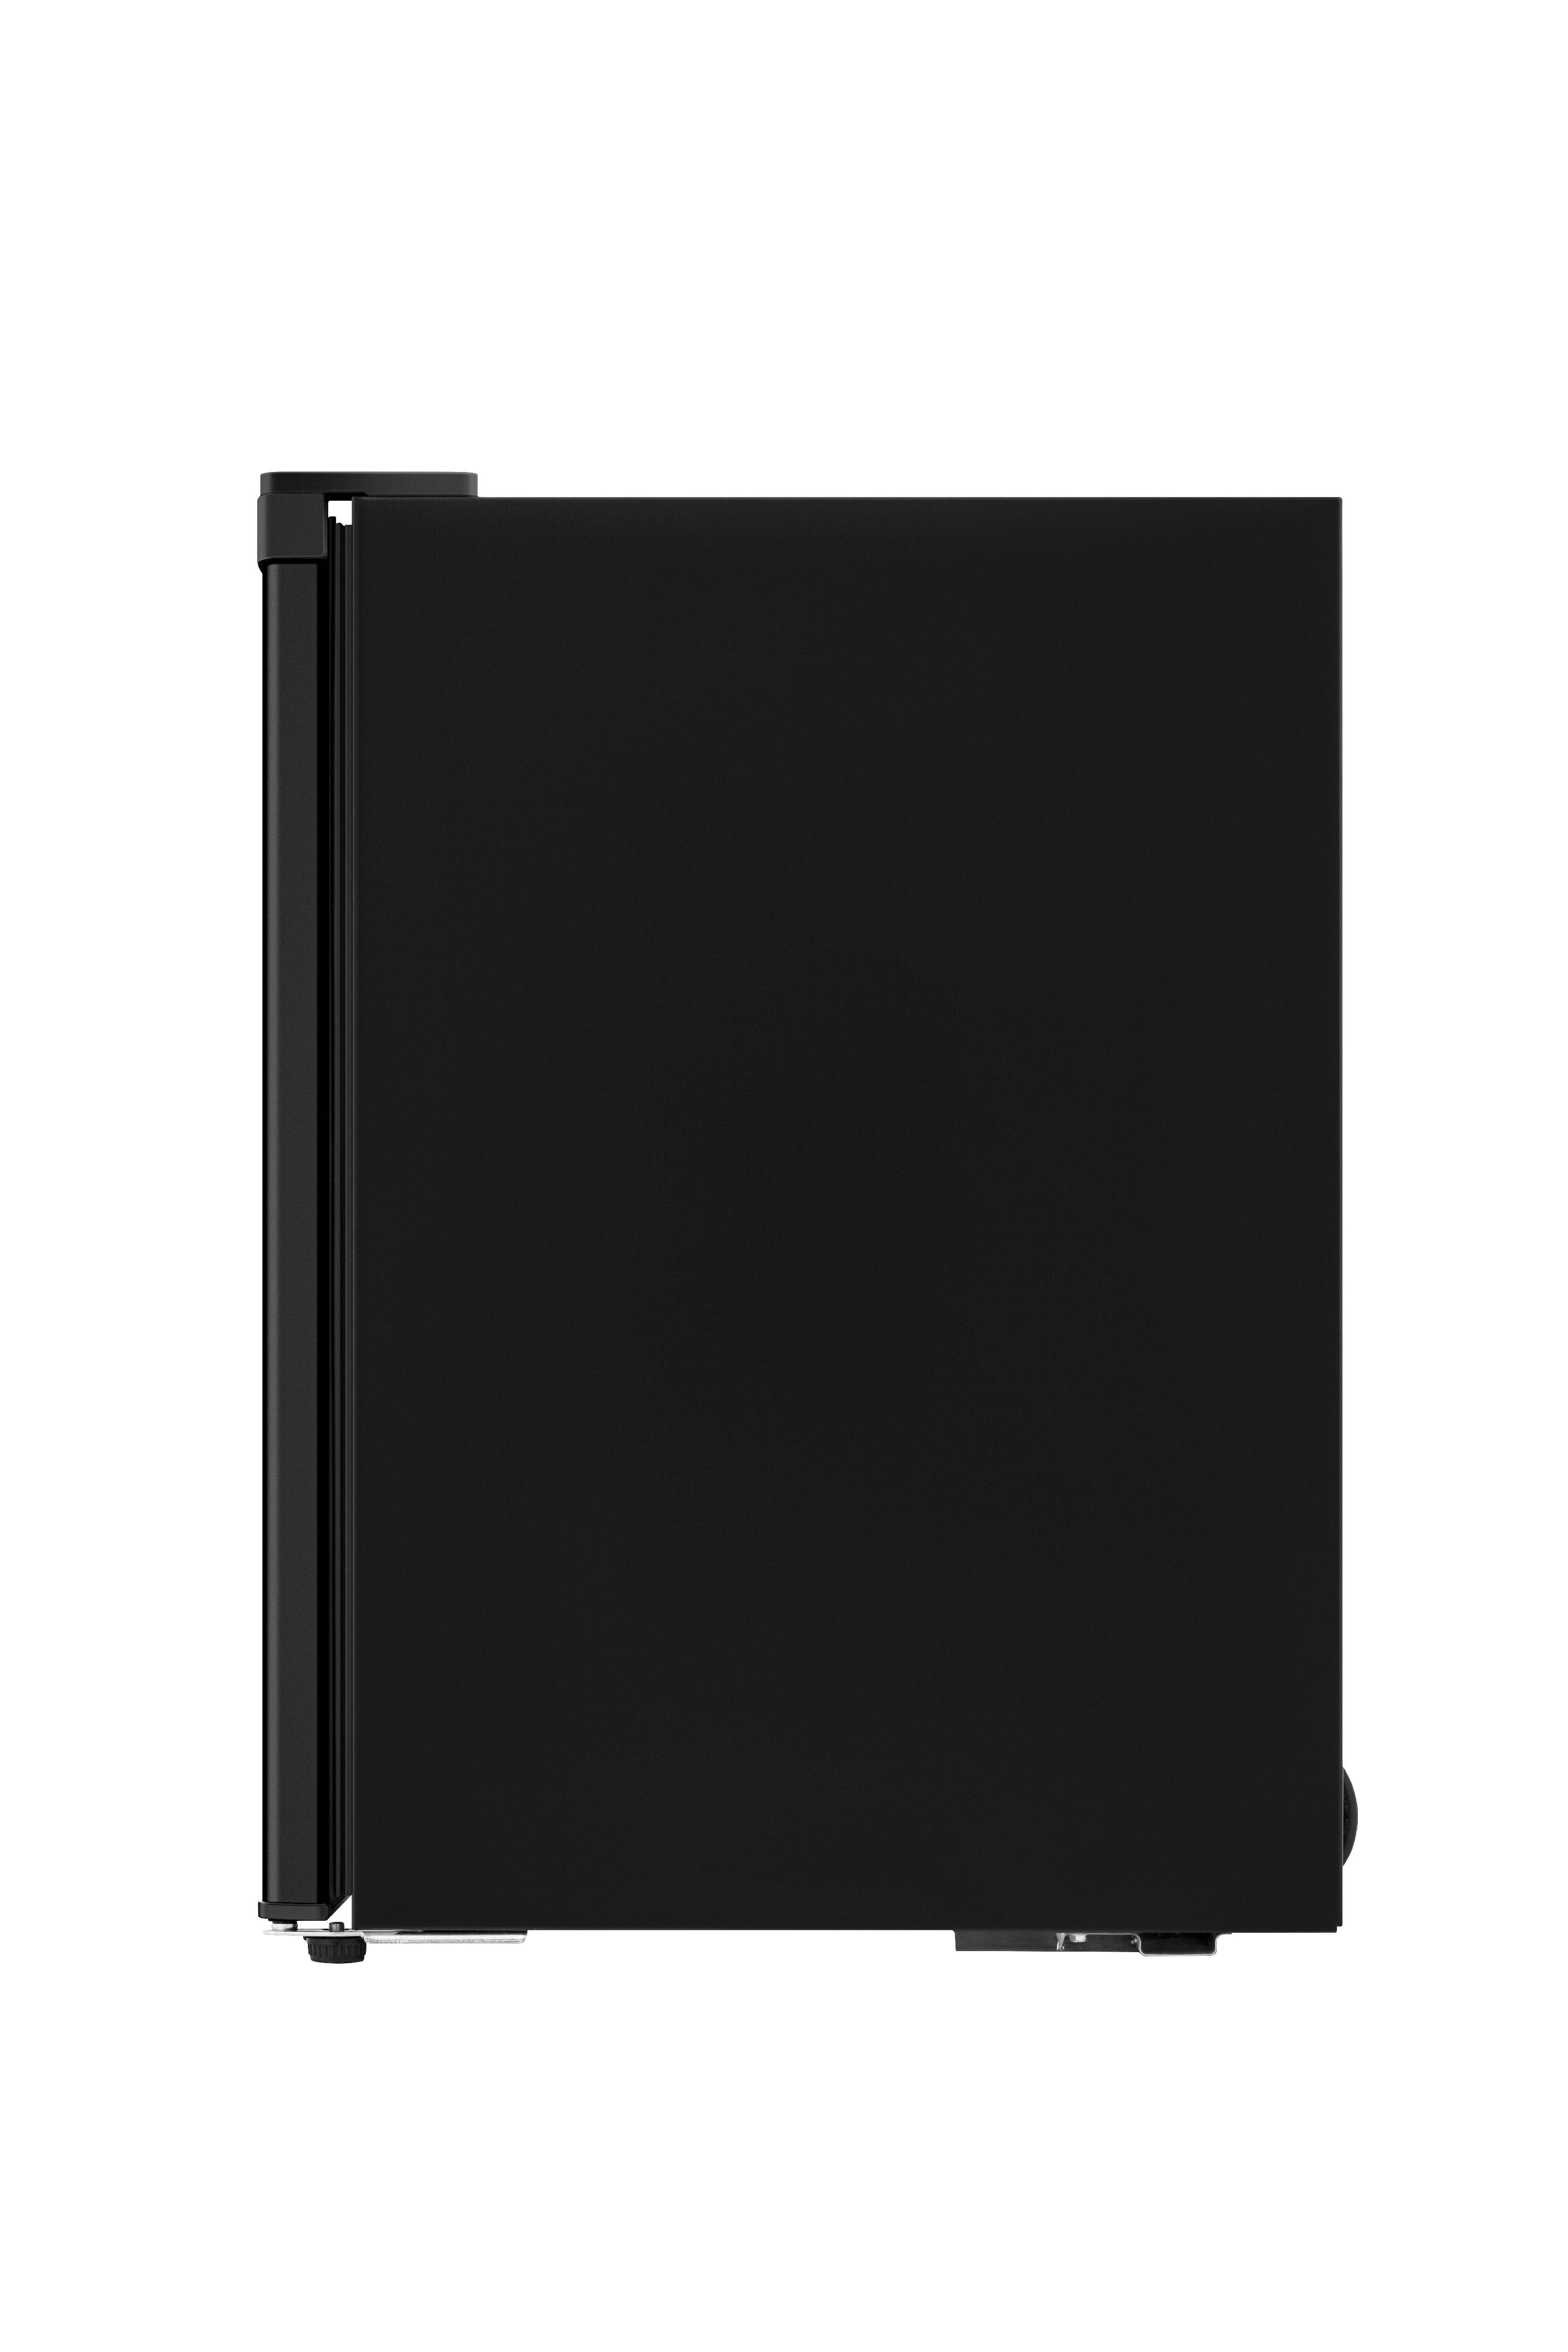 Hisense 2.7 Cu Ft Single Door Mini Fridge RR27D6ABE, Black - image 4 of 12